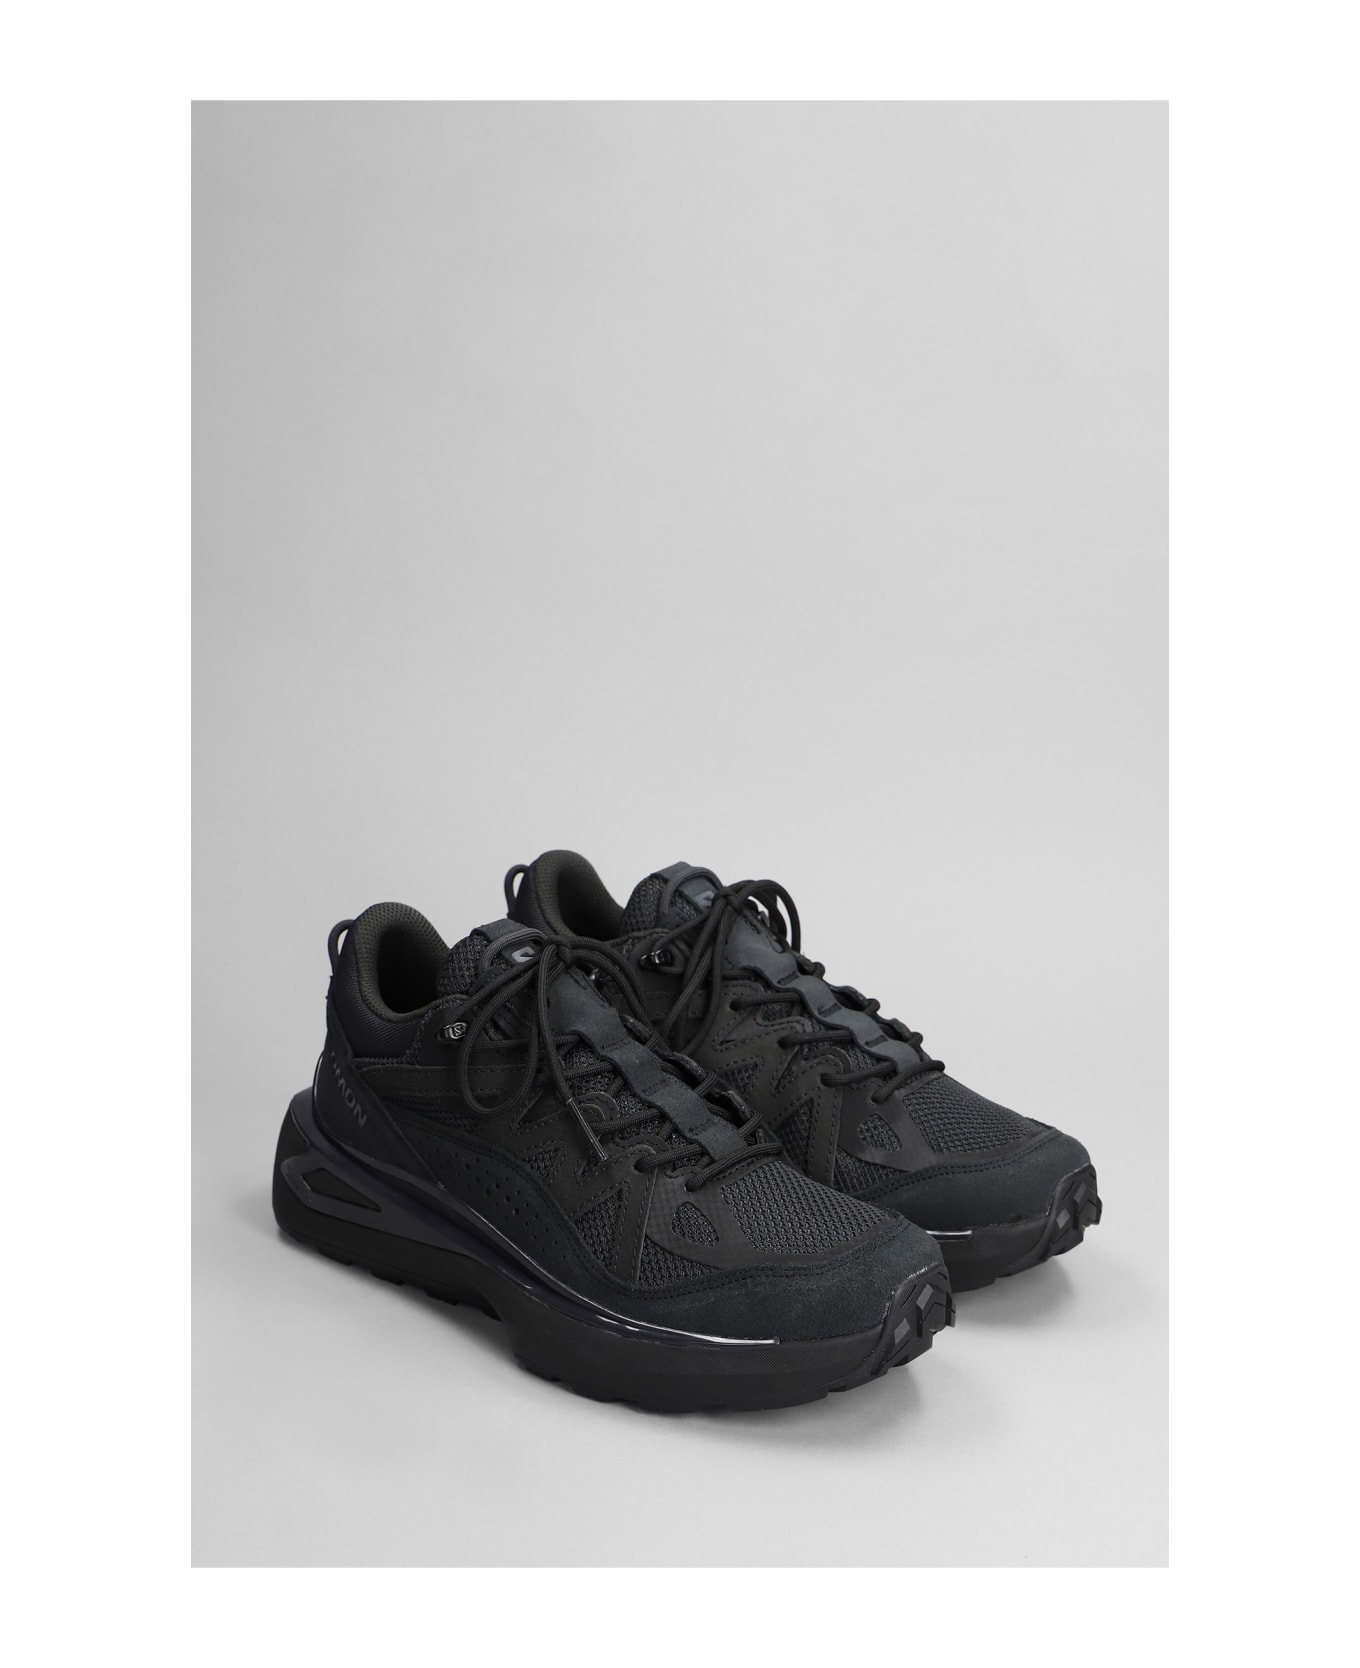 Salomon Odyssey Elmt Low Sneakers In Black Synthetic Fibers - black